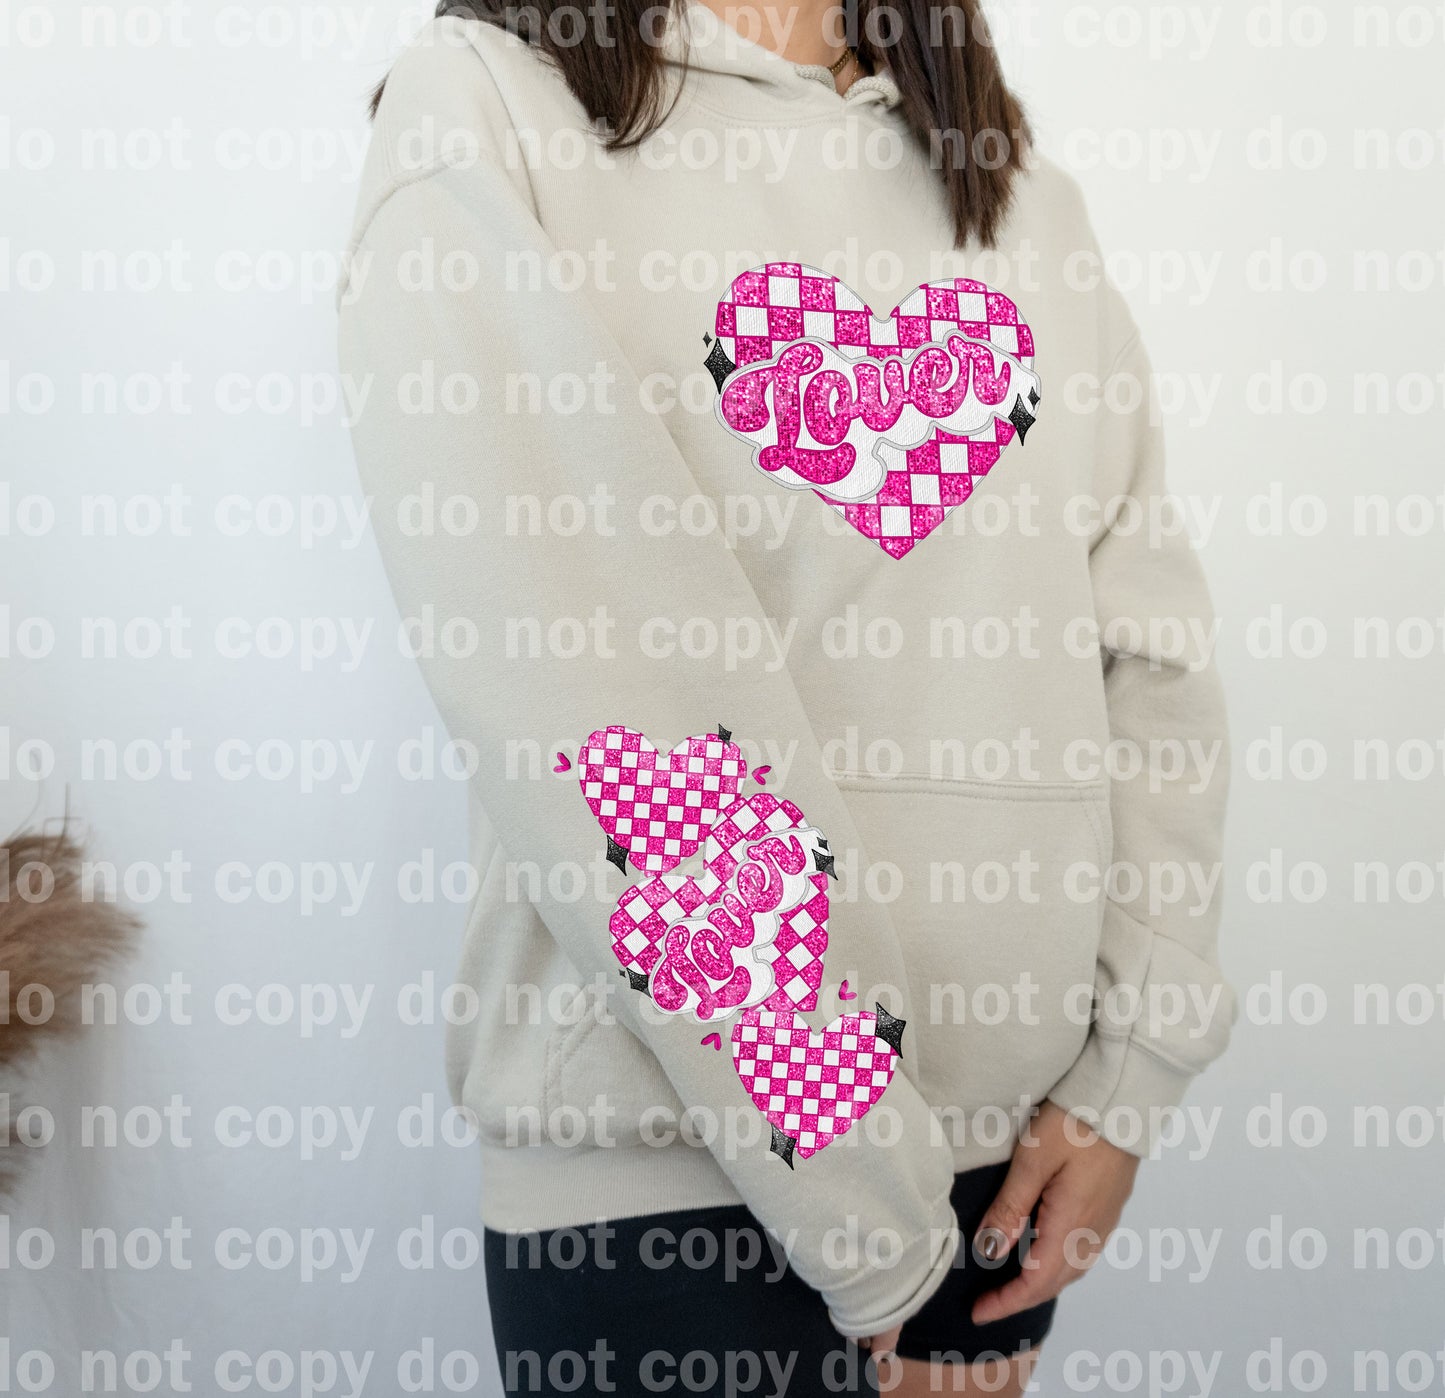 Lover Checkered Heart con diseño de manga opcional Impresión de ensueño o impresión por sublimación